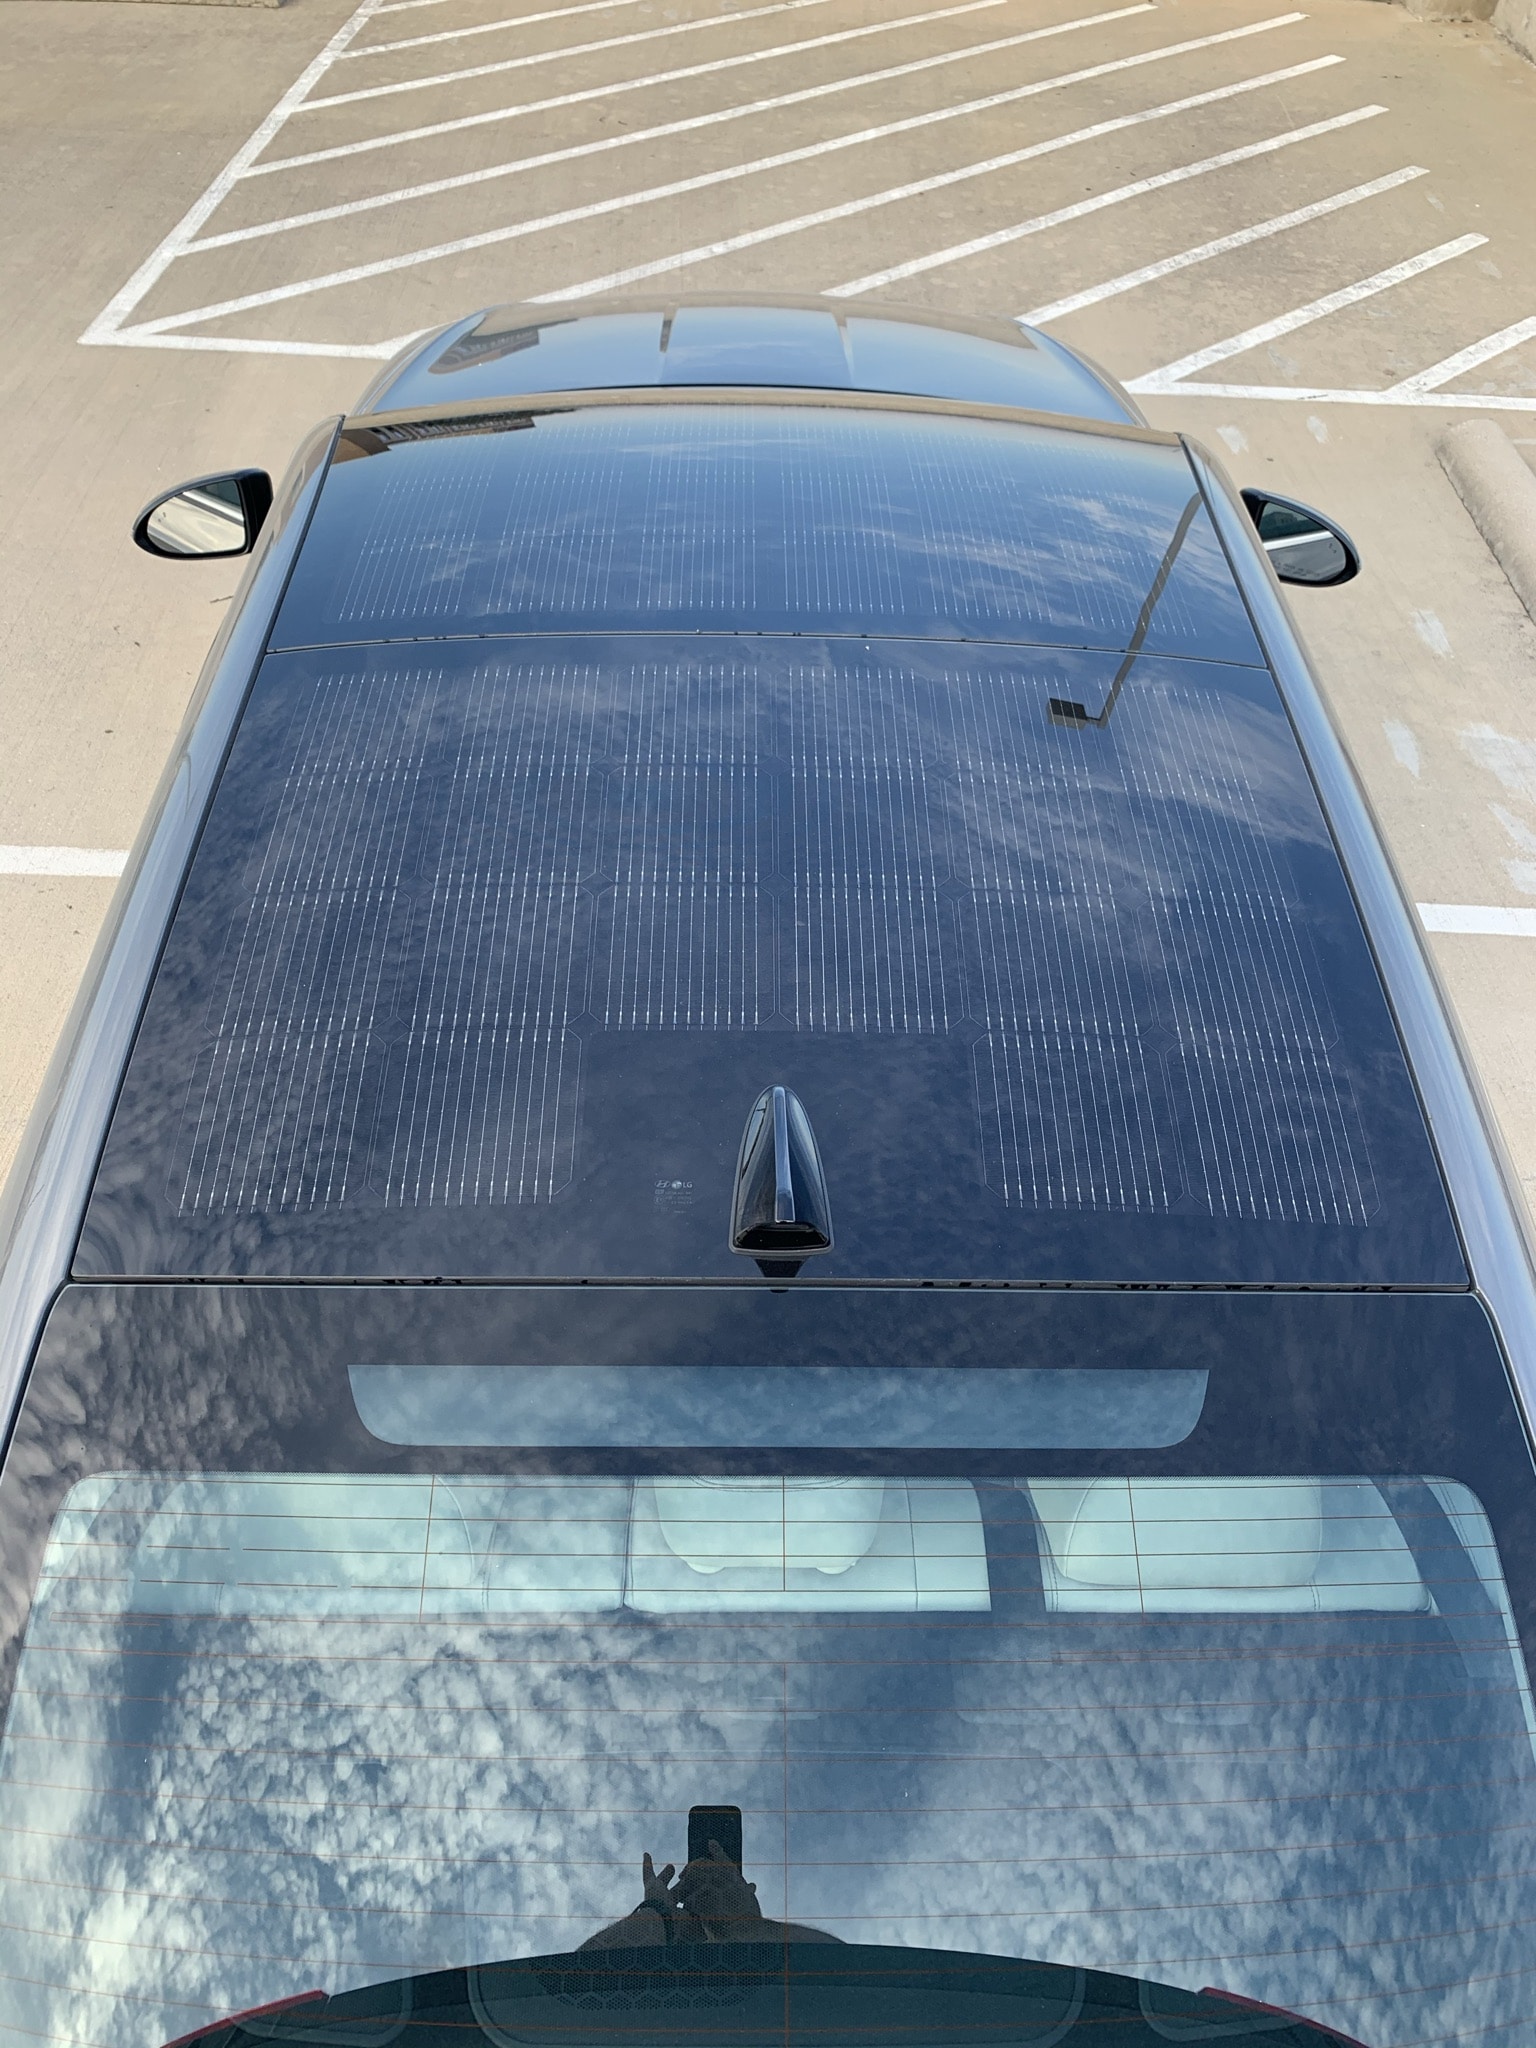 Sonata Hybrid, The Sonata Hybrid Has a Solar Roof, Days of a Domestic Dad